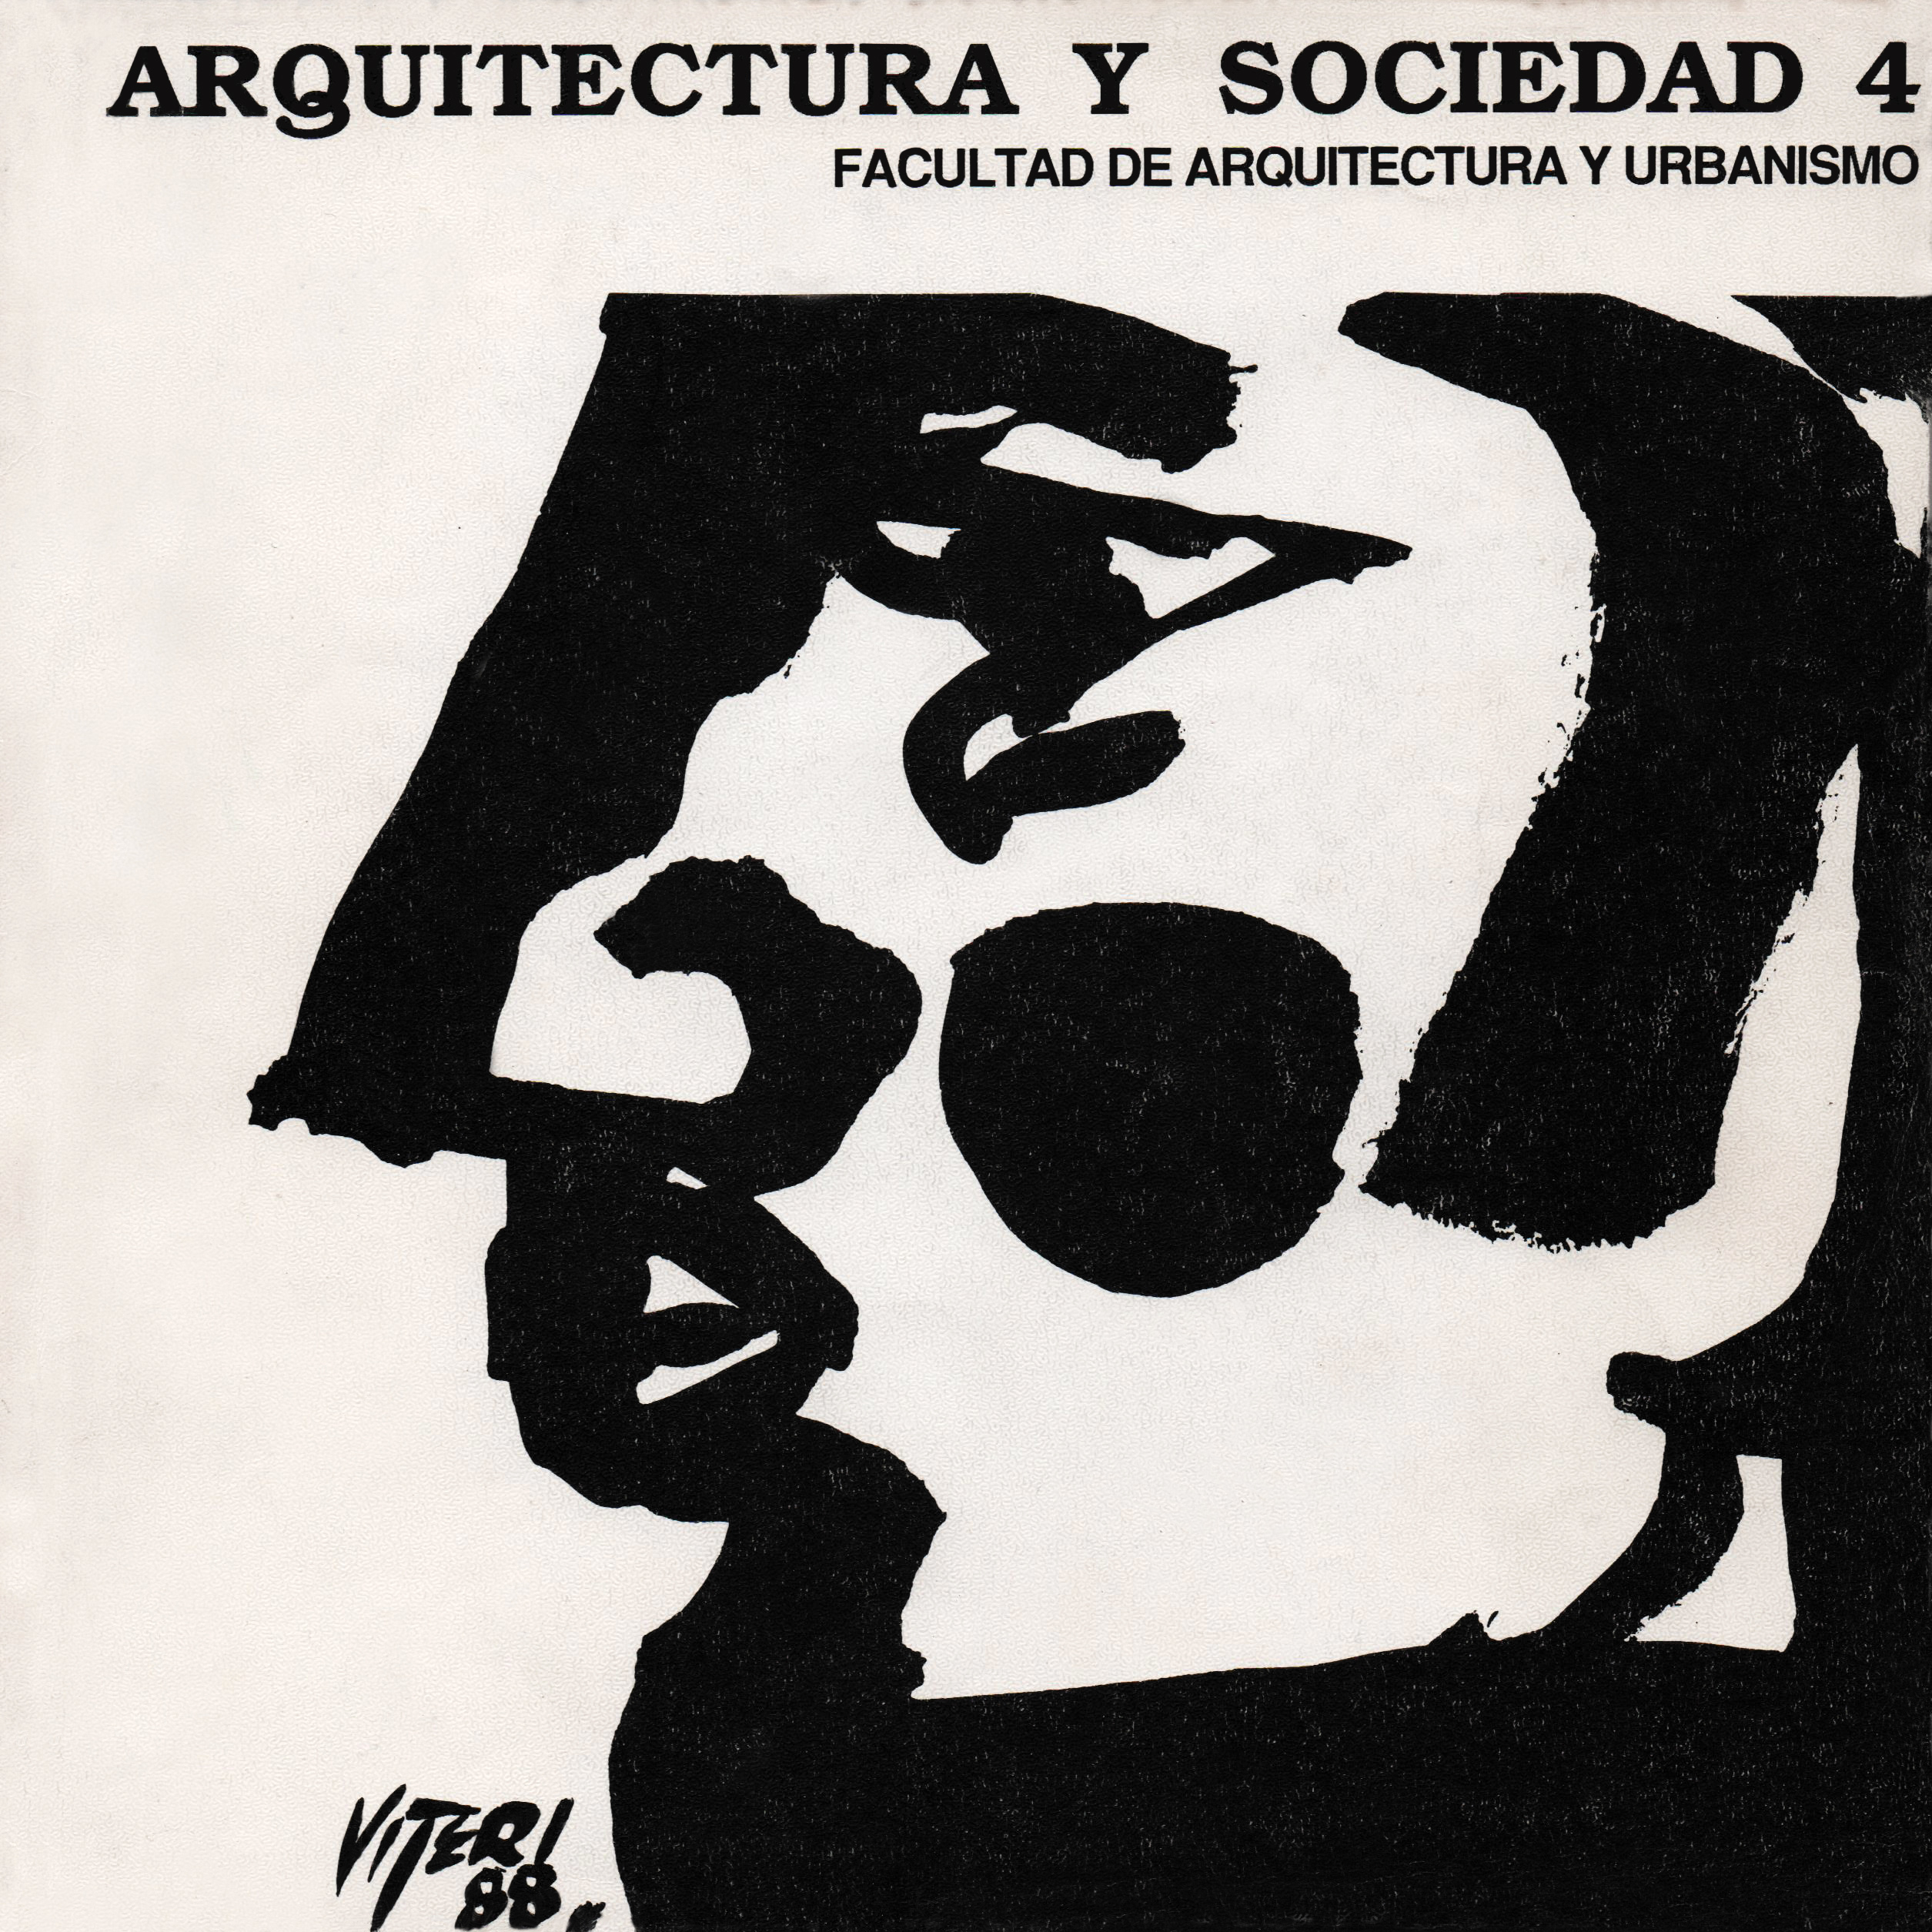 					Ver Vol. 1 Núm. 4 (1988): Arquitectura y Sociedad
				